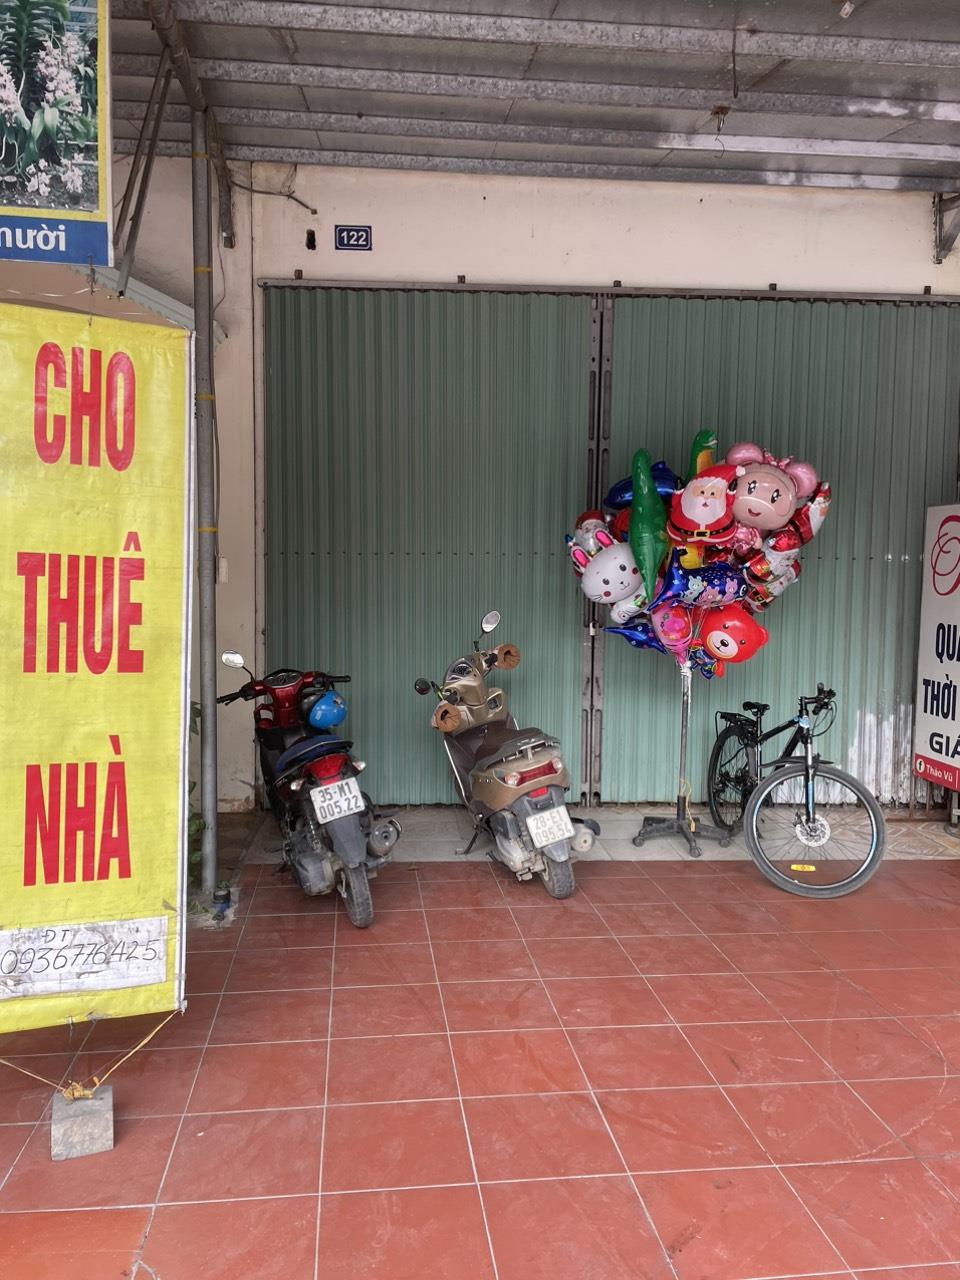 Chính chủ cần cho thuê mặt bằng kinh doanh tại 122 Đường Lương Văn Thăng, thị trấn Nho Quan.Ninh Bình1023689